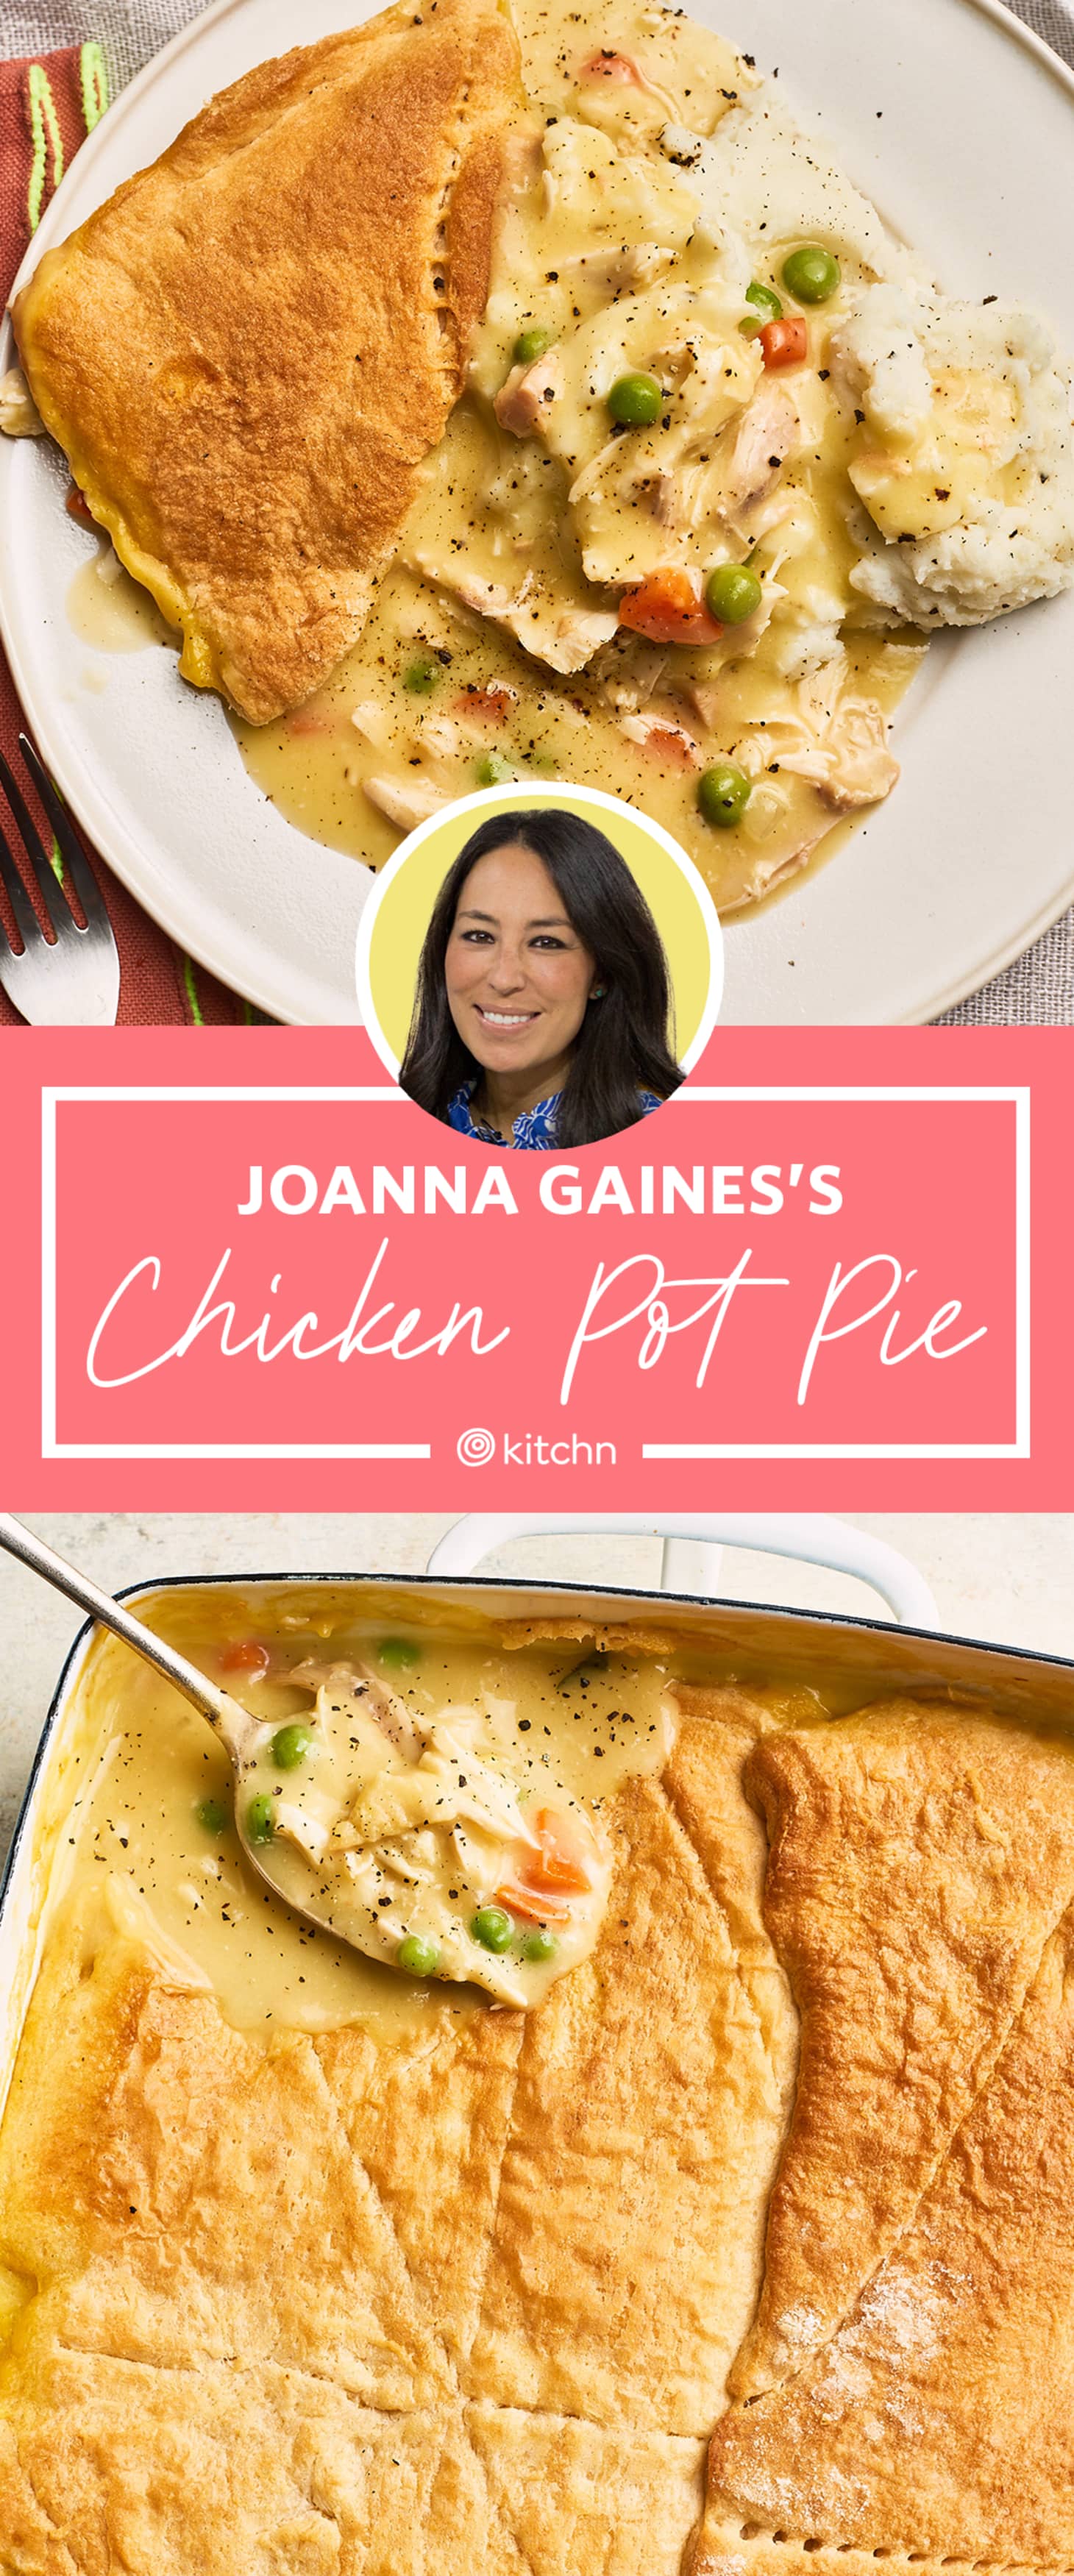 Joanna Gaines Chicken Pot Pie Recipe